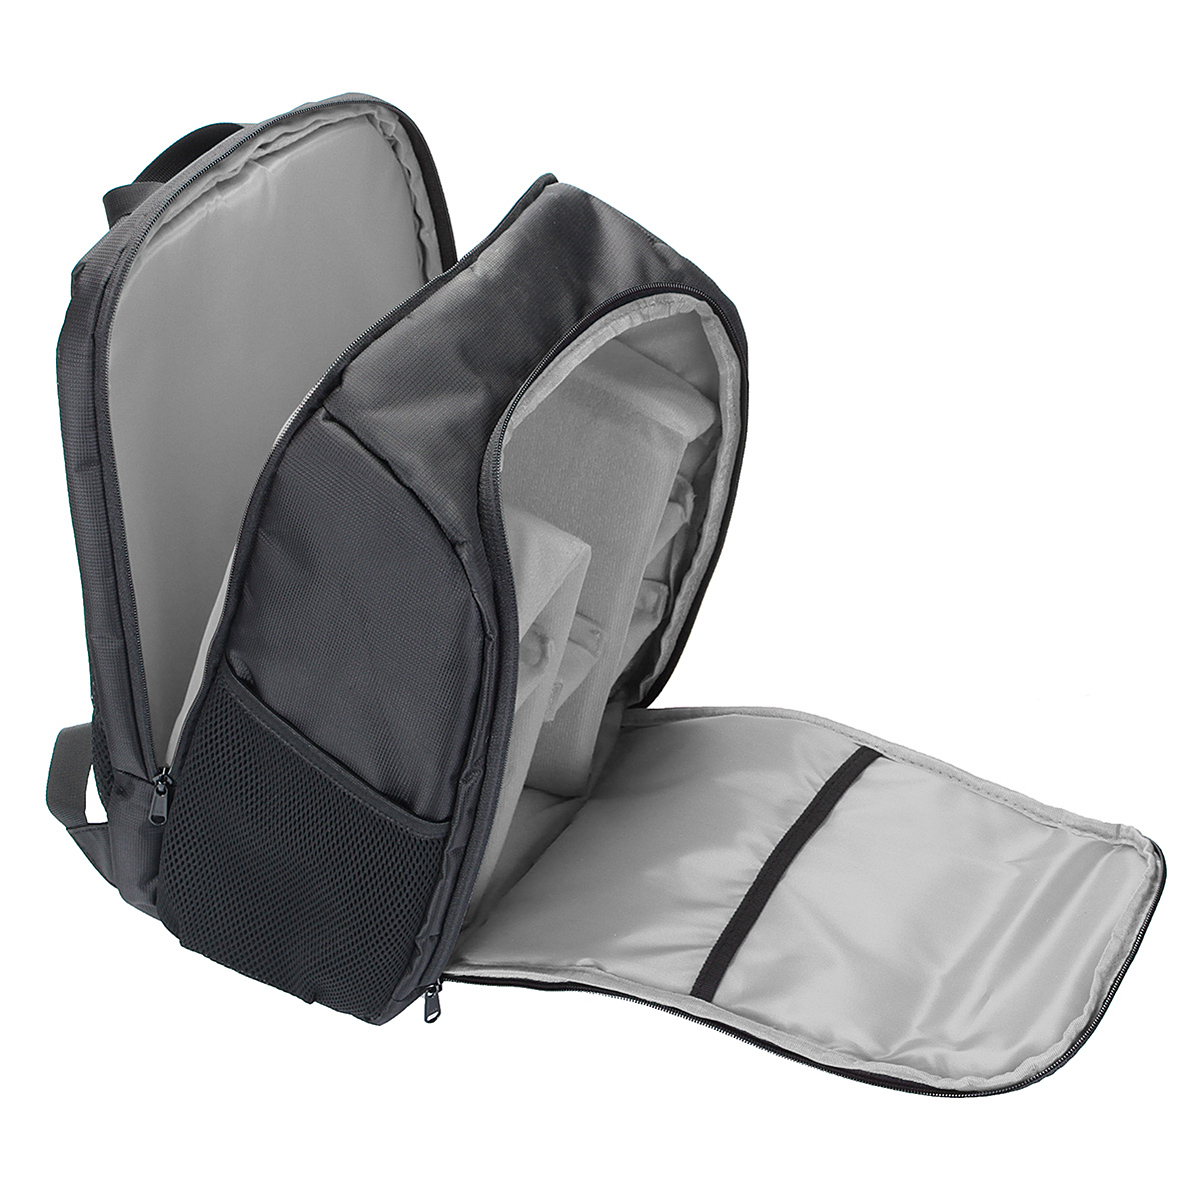 Waterproof-Backpack-Shoulder-Bag-Laptop-Case-For-DSLR-Camera-Lens-Accessories-1401643-5